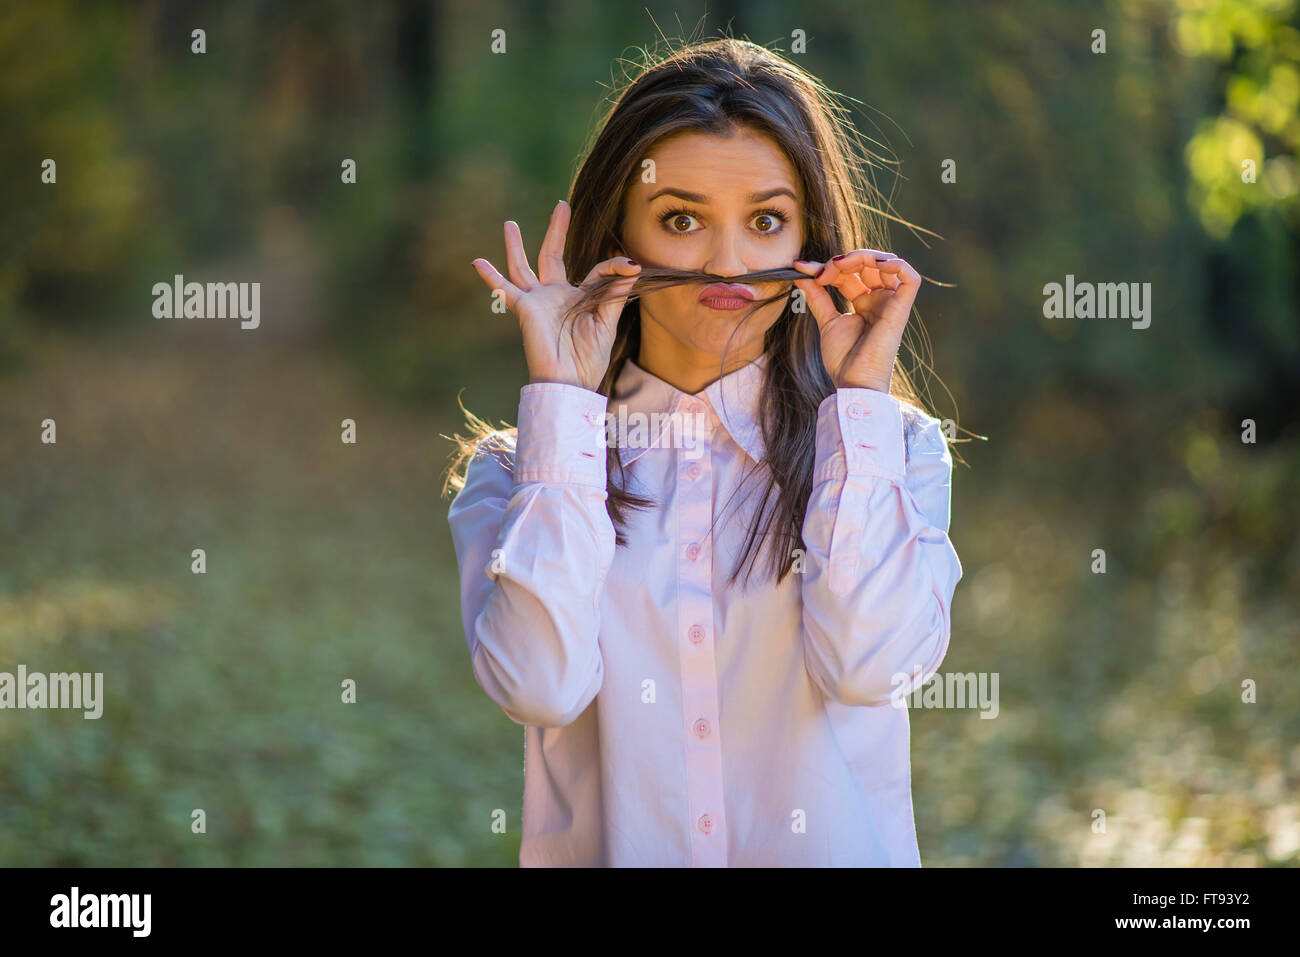 Una ragazza sta facendo i baffi da i suoi capelli con gli occhi aperti e un eccentrico espressione sul viso. Foto Stock